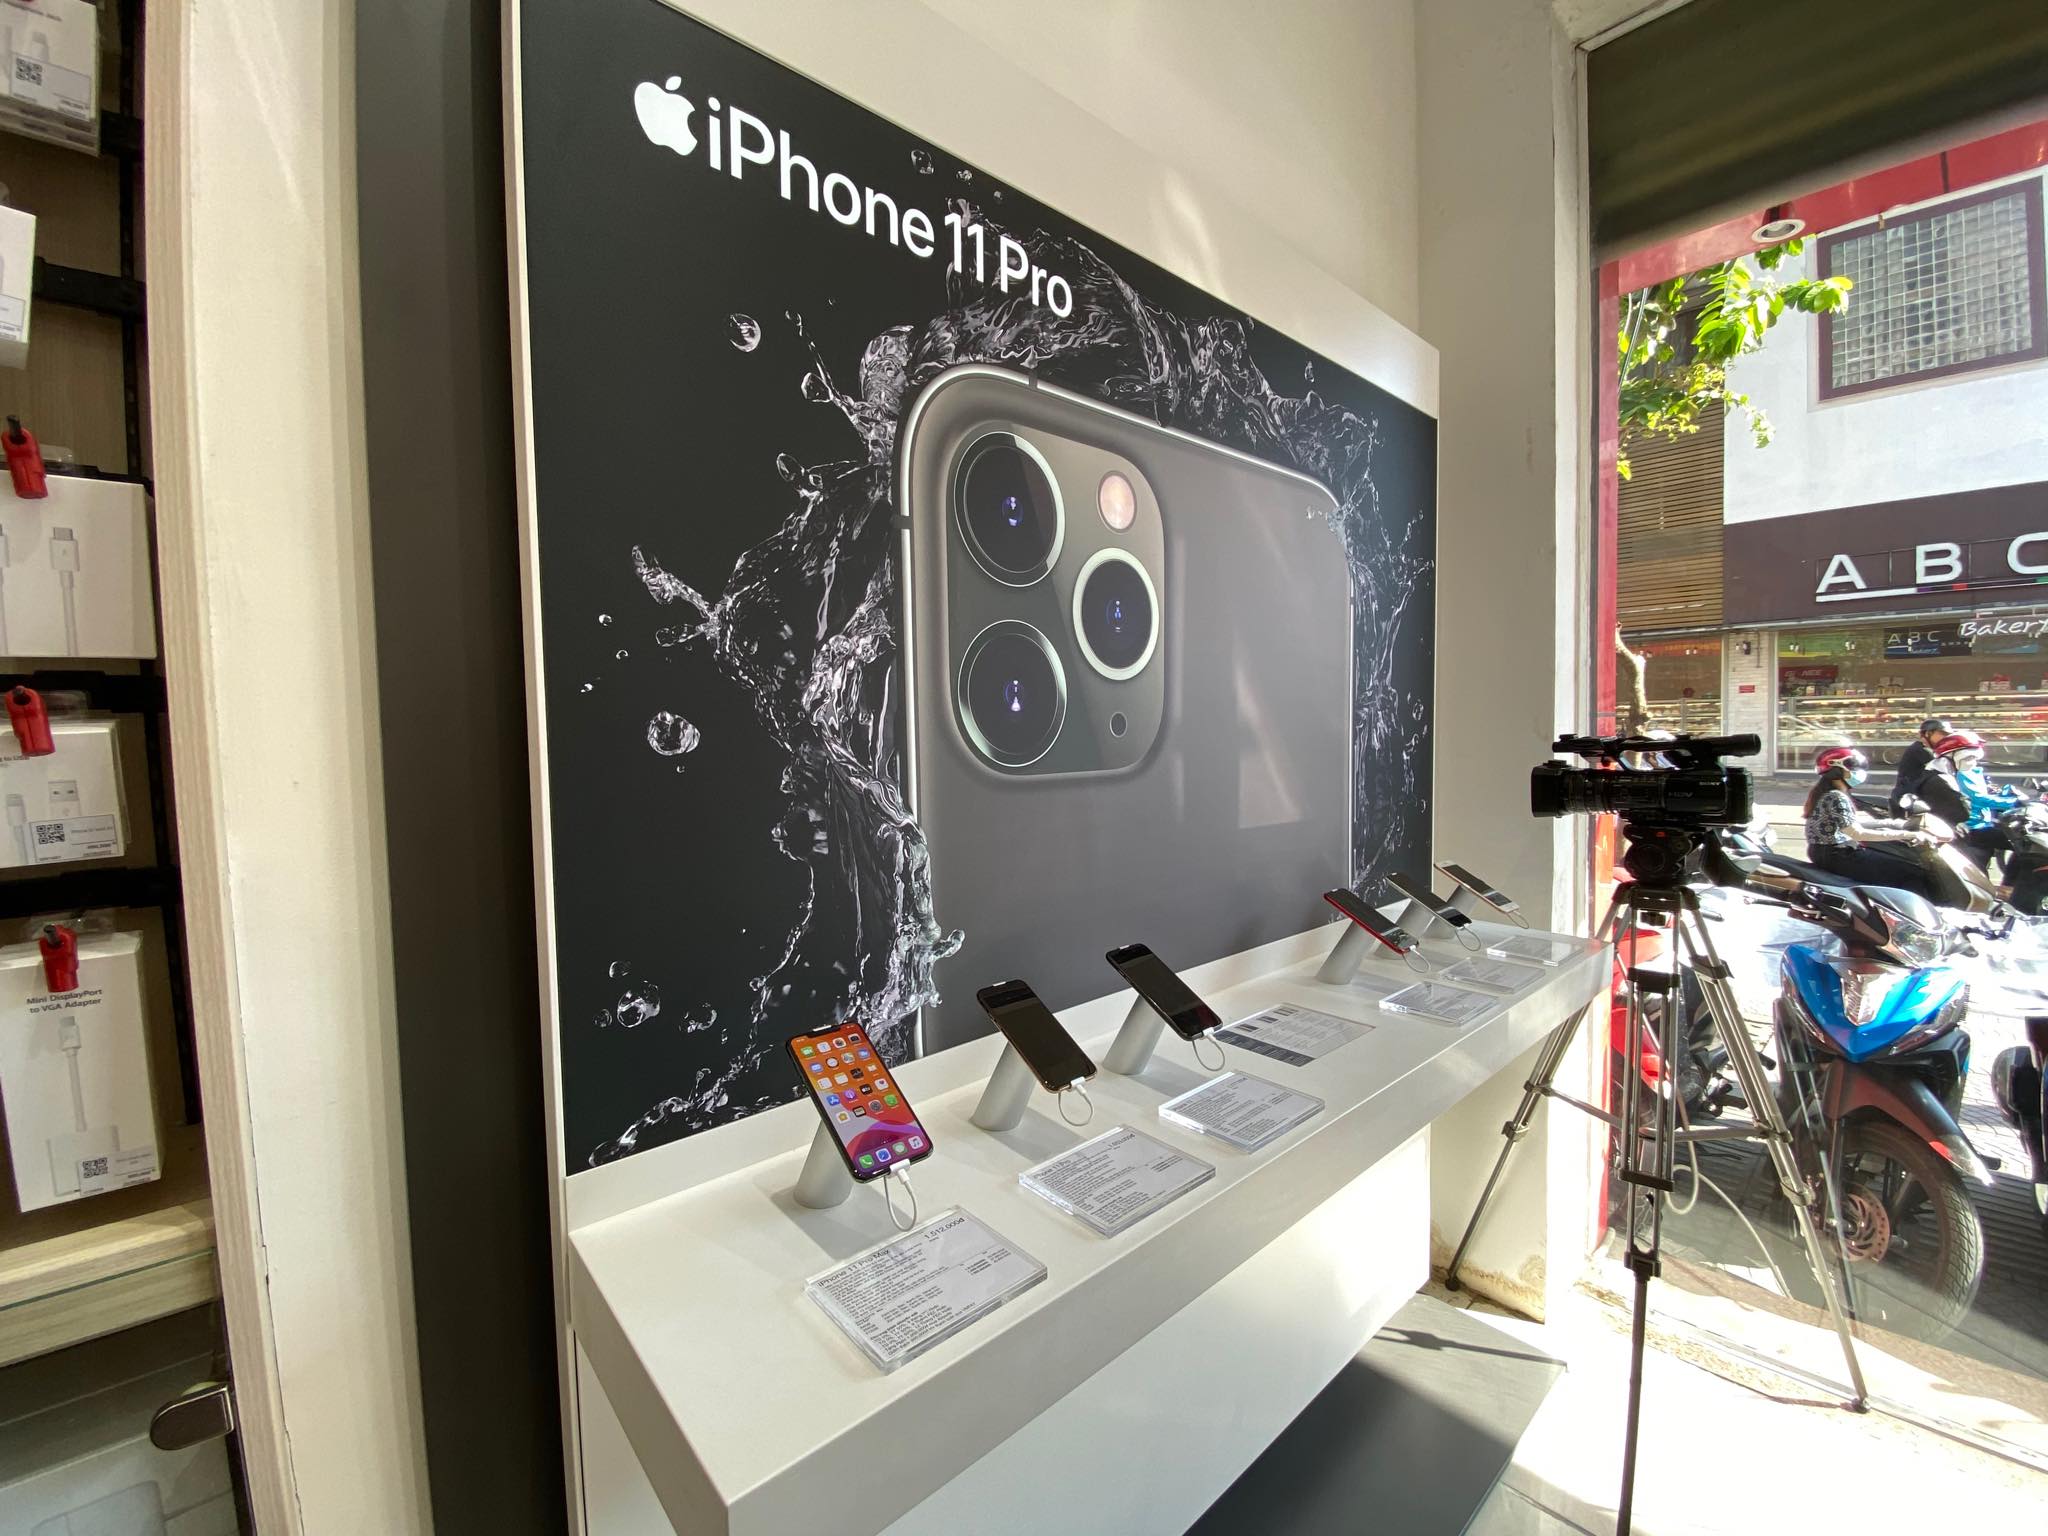 FPT Shop lên kệ bộ 3 iPhone 11 với chương trình Thu cũ đổi mới, trả góp từ 980,000 đồng/tháng